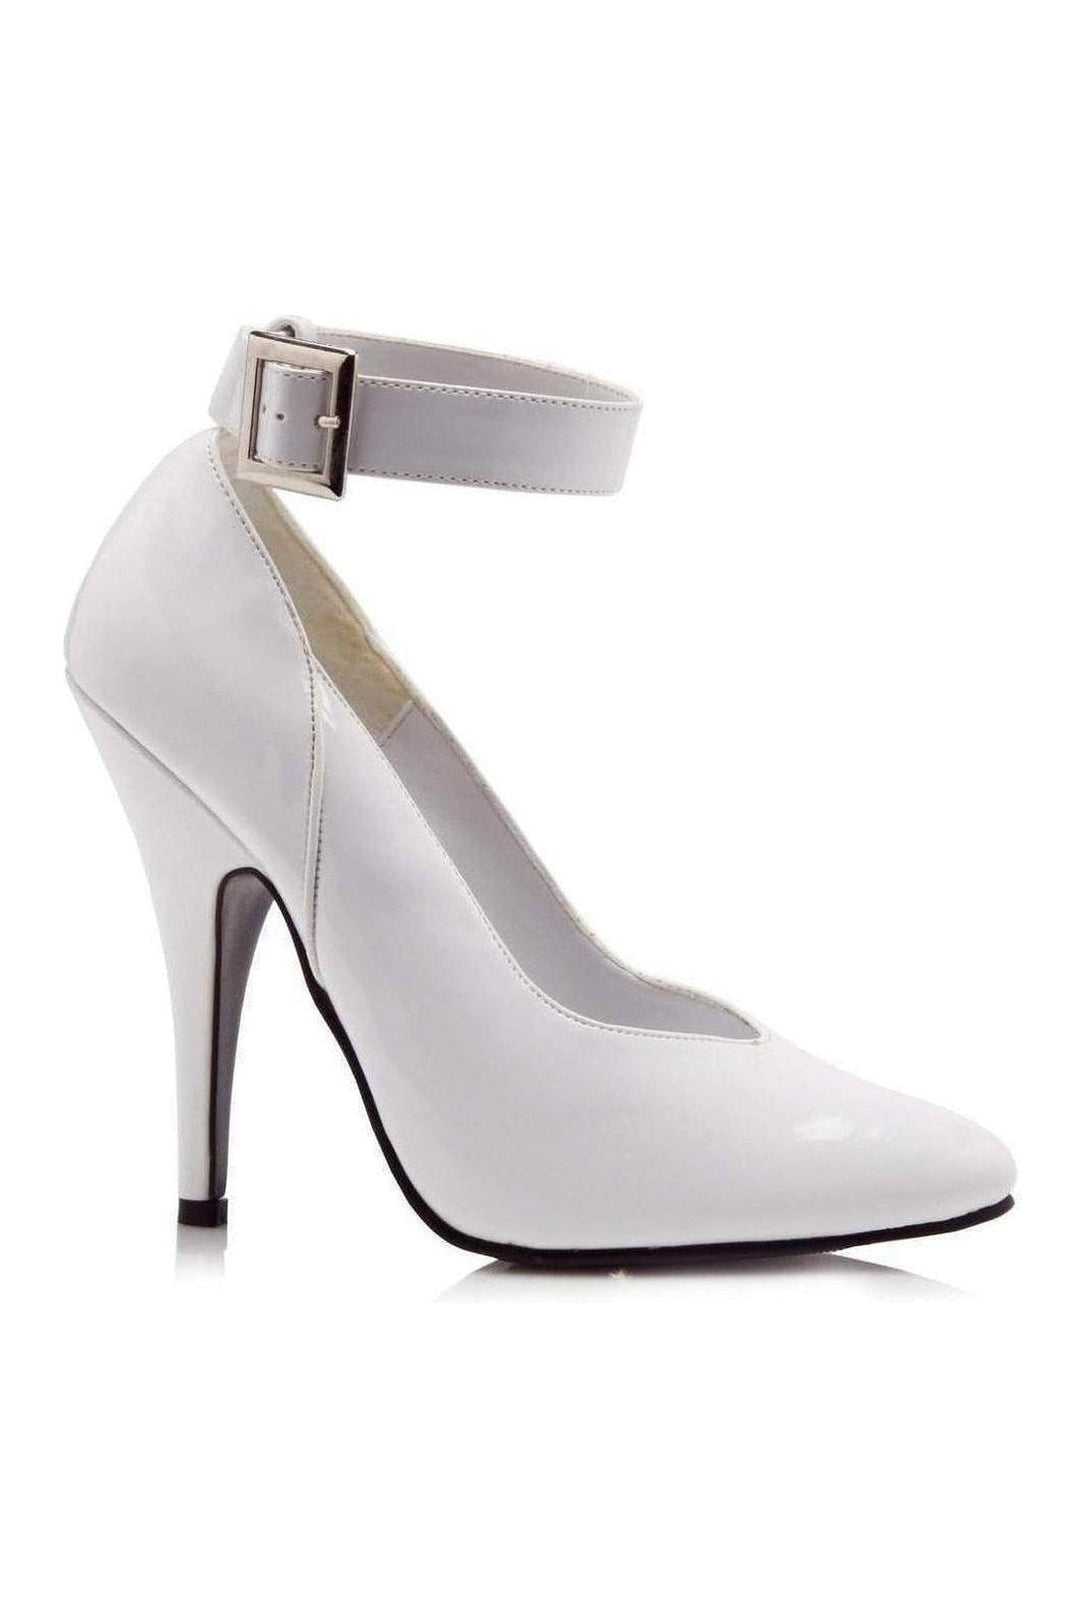 8221 Pump | White Patent-Pump-Ellie Shoes-White-7-Patent-SEXYSHOES.COM